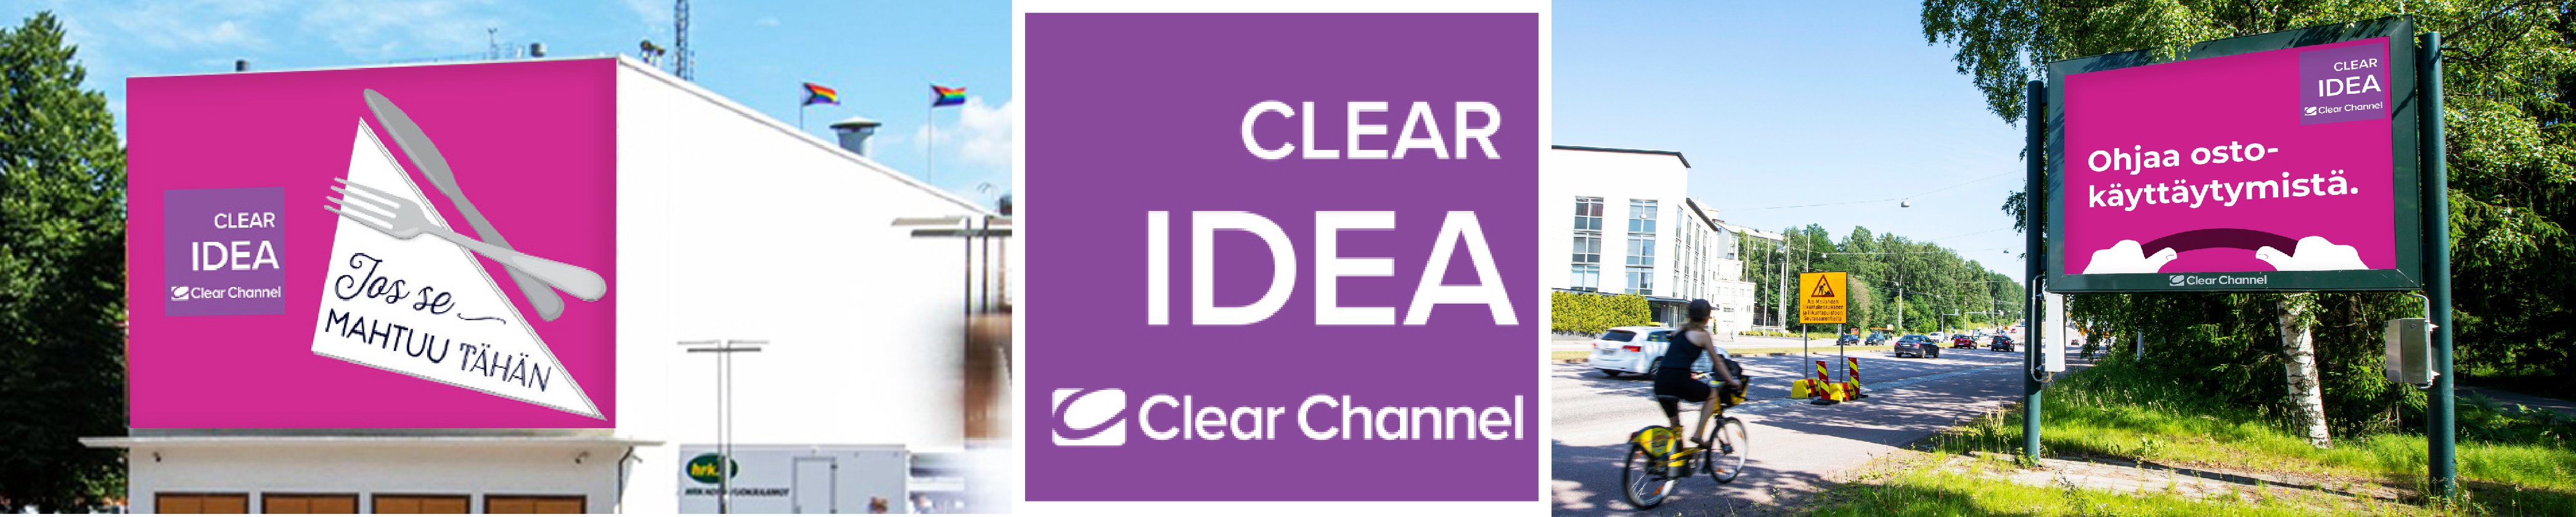 Clear Idea hyvä ulkomainos_banneri